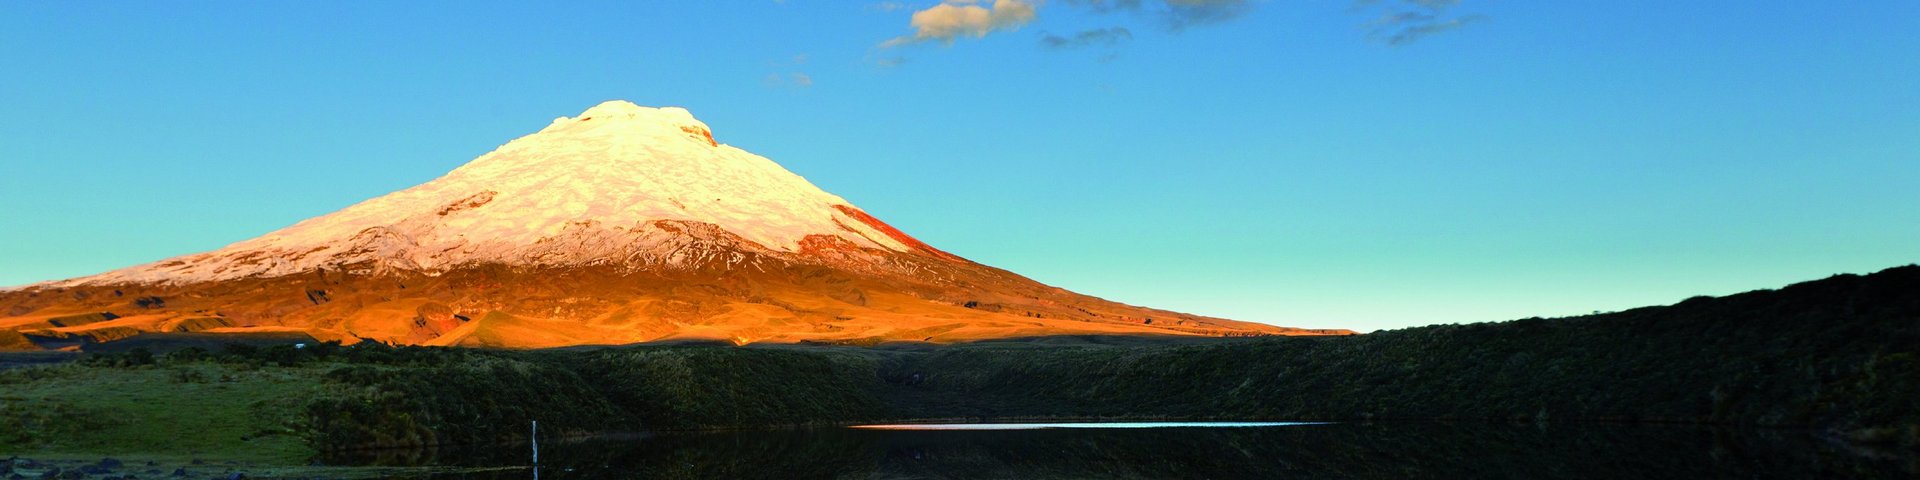 Vulkan Cotopaxi mit Spiegelbild